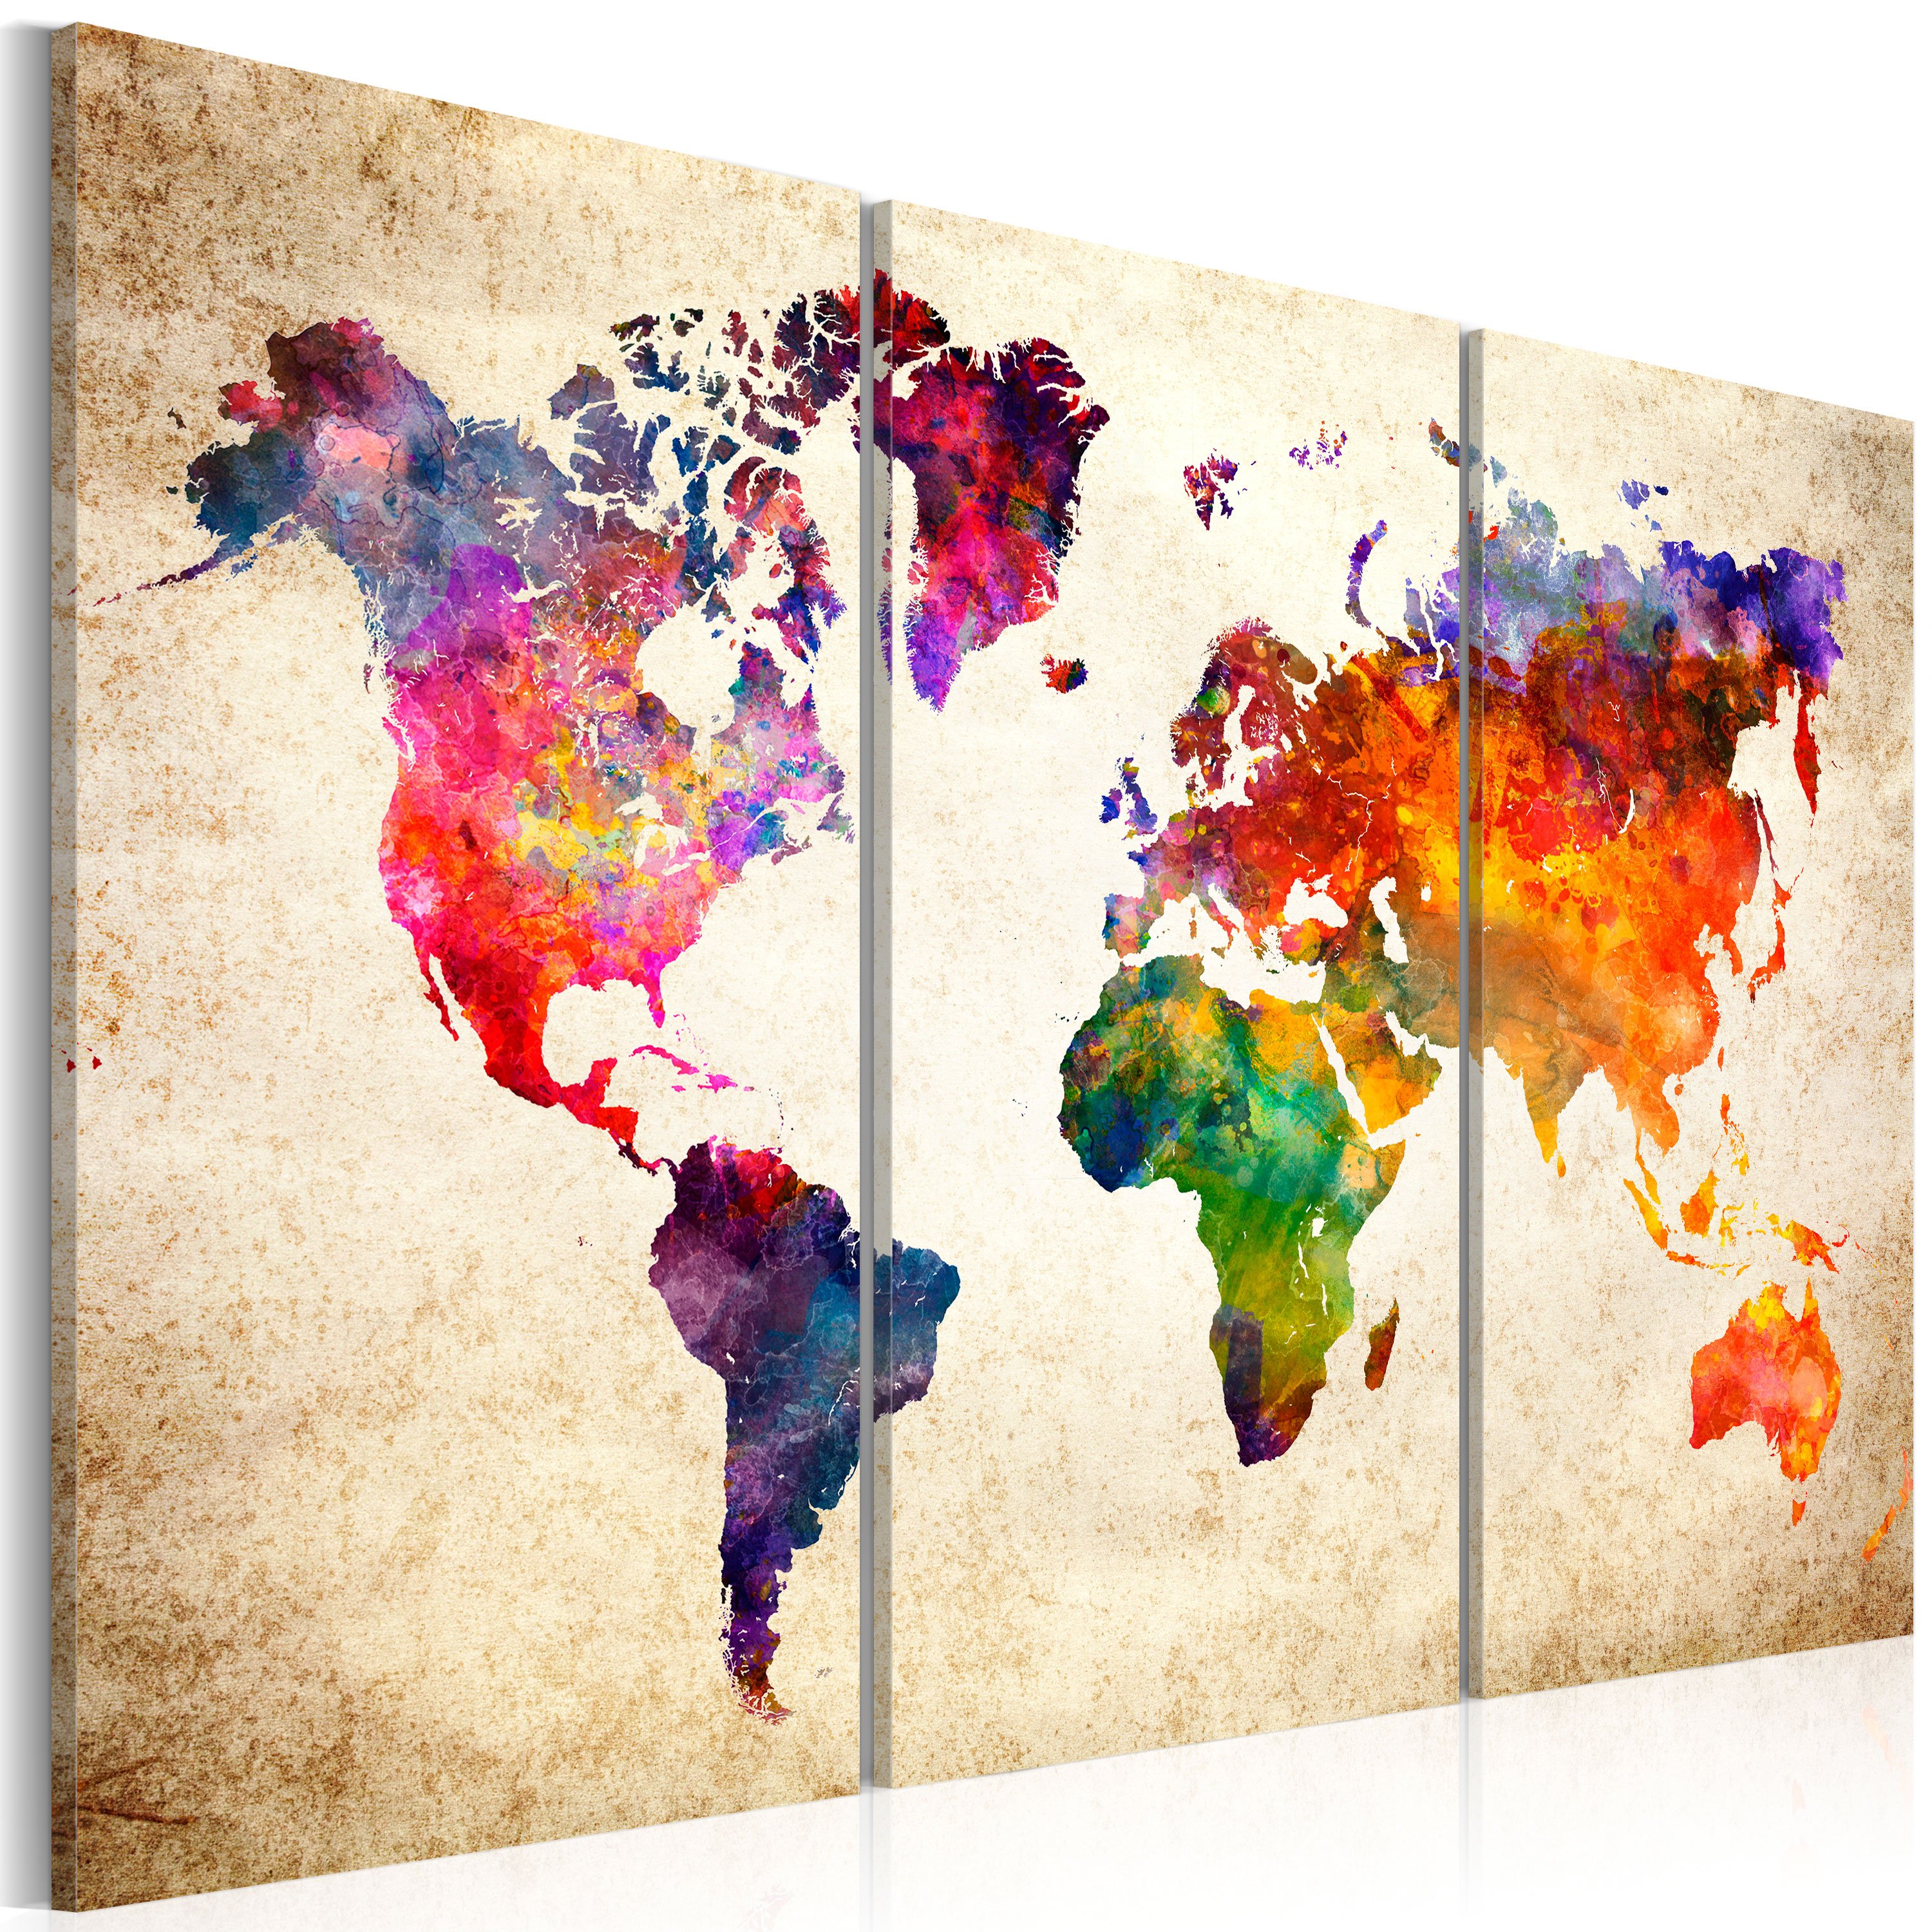 Kunstdruck auf Leinwand \'The World\'s Map in Watercolor\' kaufen | KunstLoft